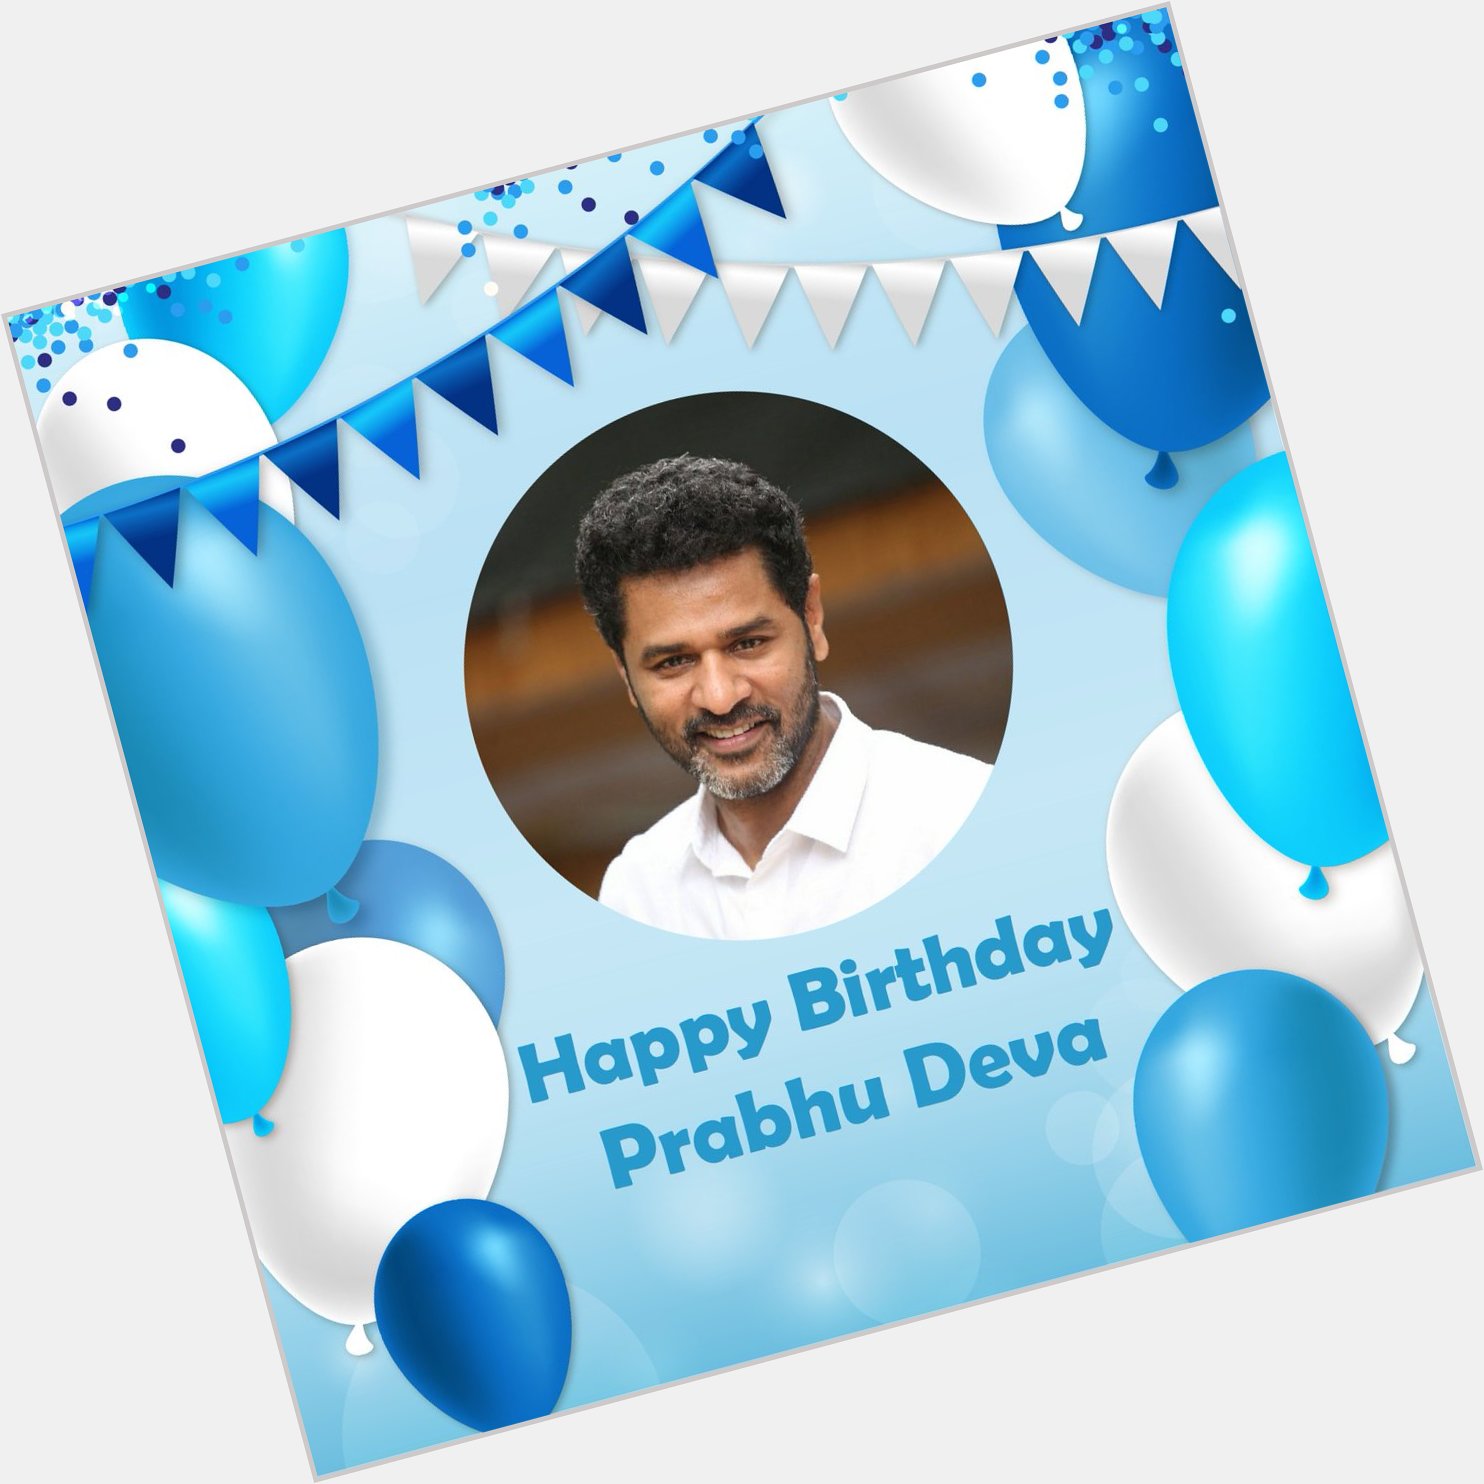 Happy birthday to prabhu deva 